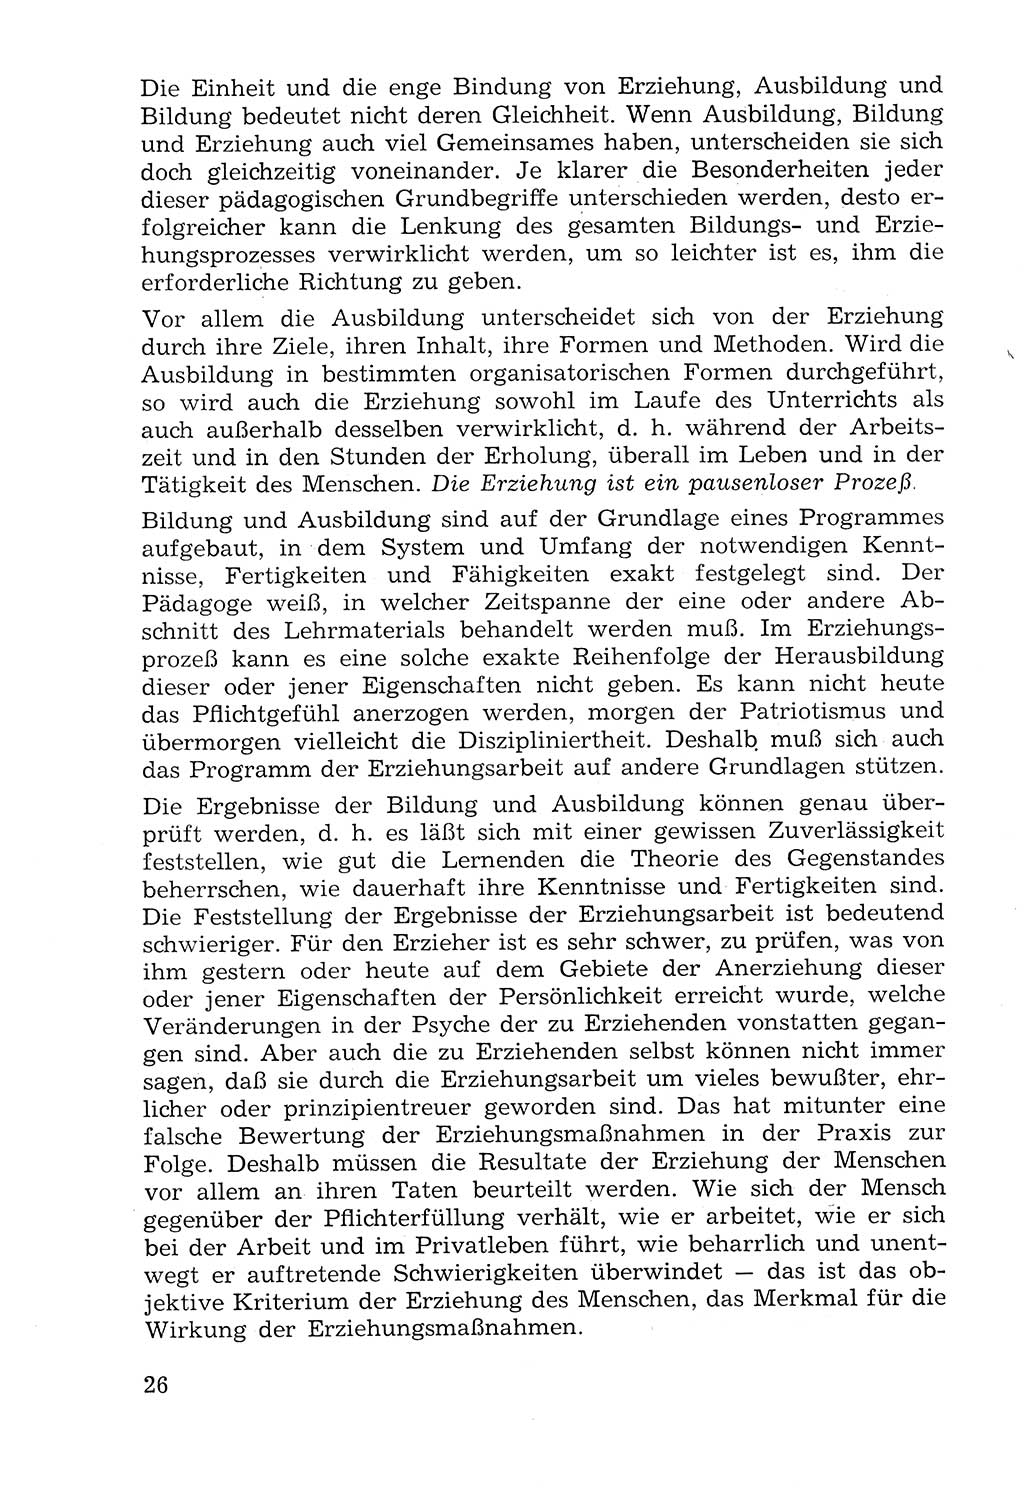 Lehrbuch der Strafvollzugspädagogik [Deutsche Demokratische Republik (DDR)] 1969, Seite 26 (Lb. SV-Pd. DDR 1969, S. 26)